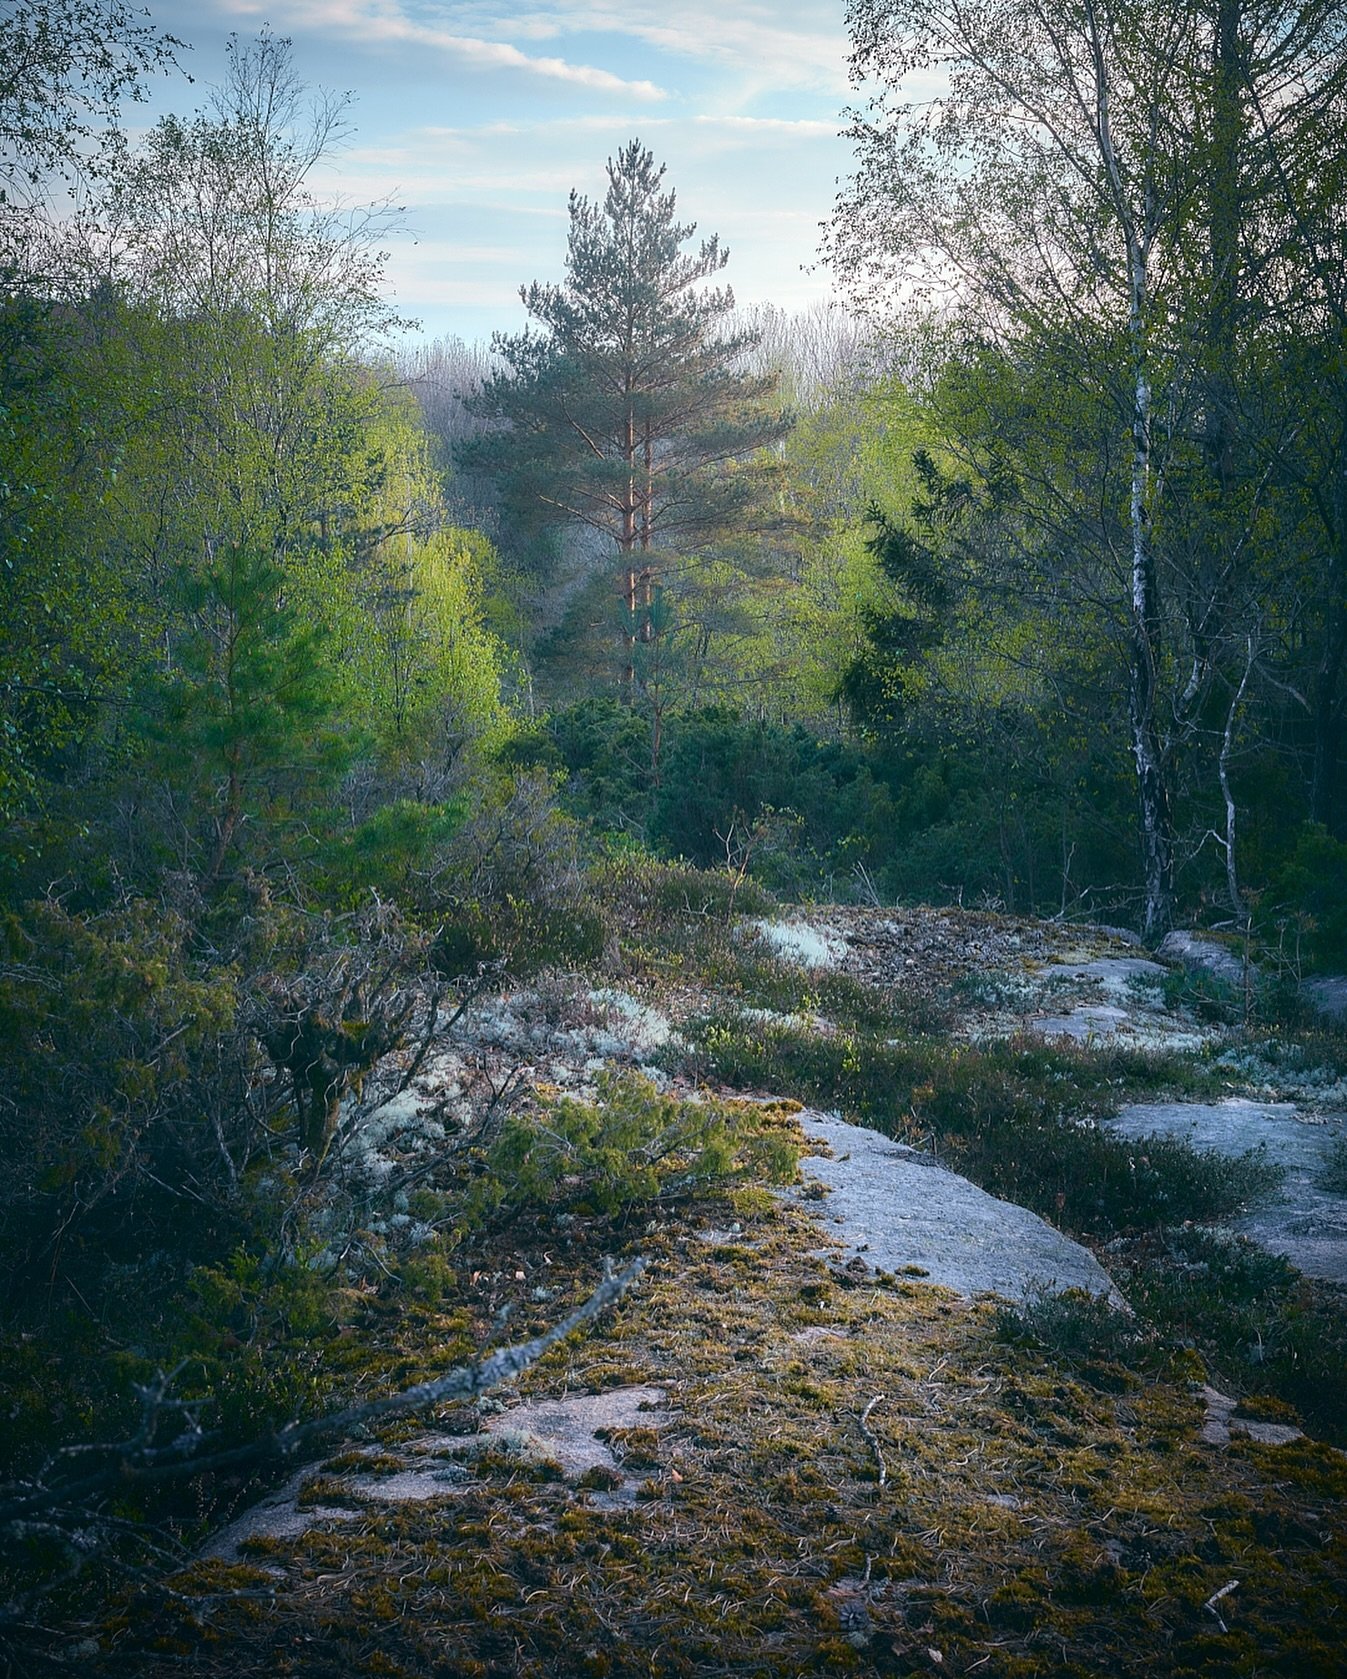 The light of spring in the forest.
.
.
.
.
#zenscape_photography #hunnebostrand #tossene #soten&auml;s #sweden #sverige #v&aring;ren #v&aring;rbilder #v&aring;r #loves_sweden #sweden_images #bohusl&auml;n #vandring #skogstur #skogen